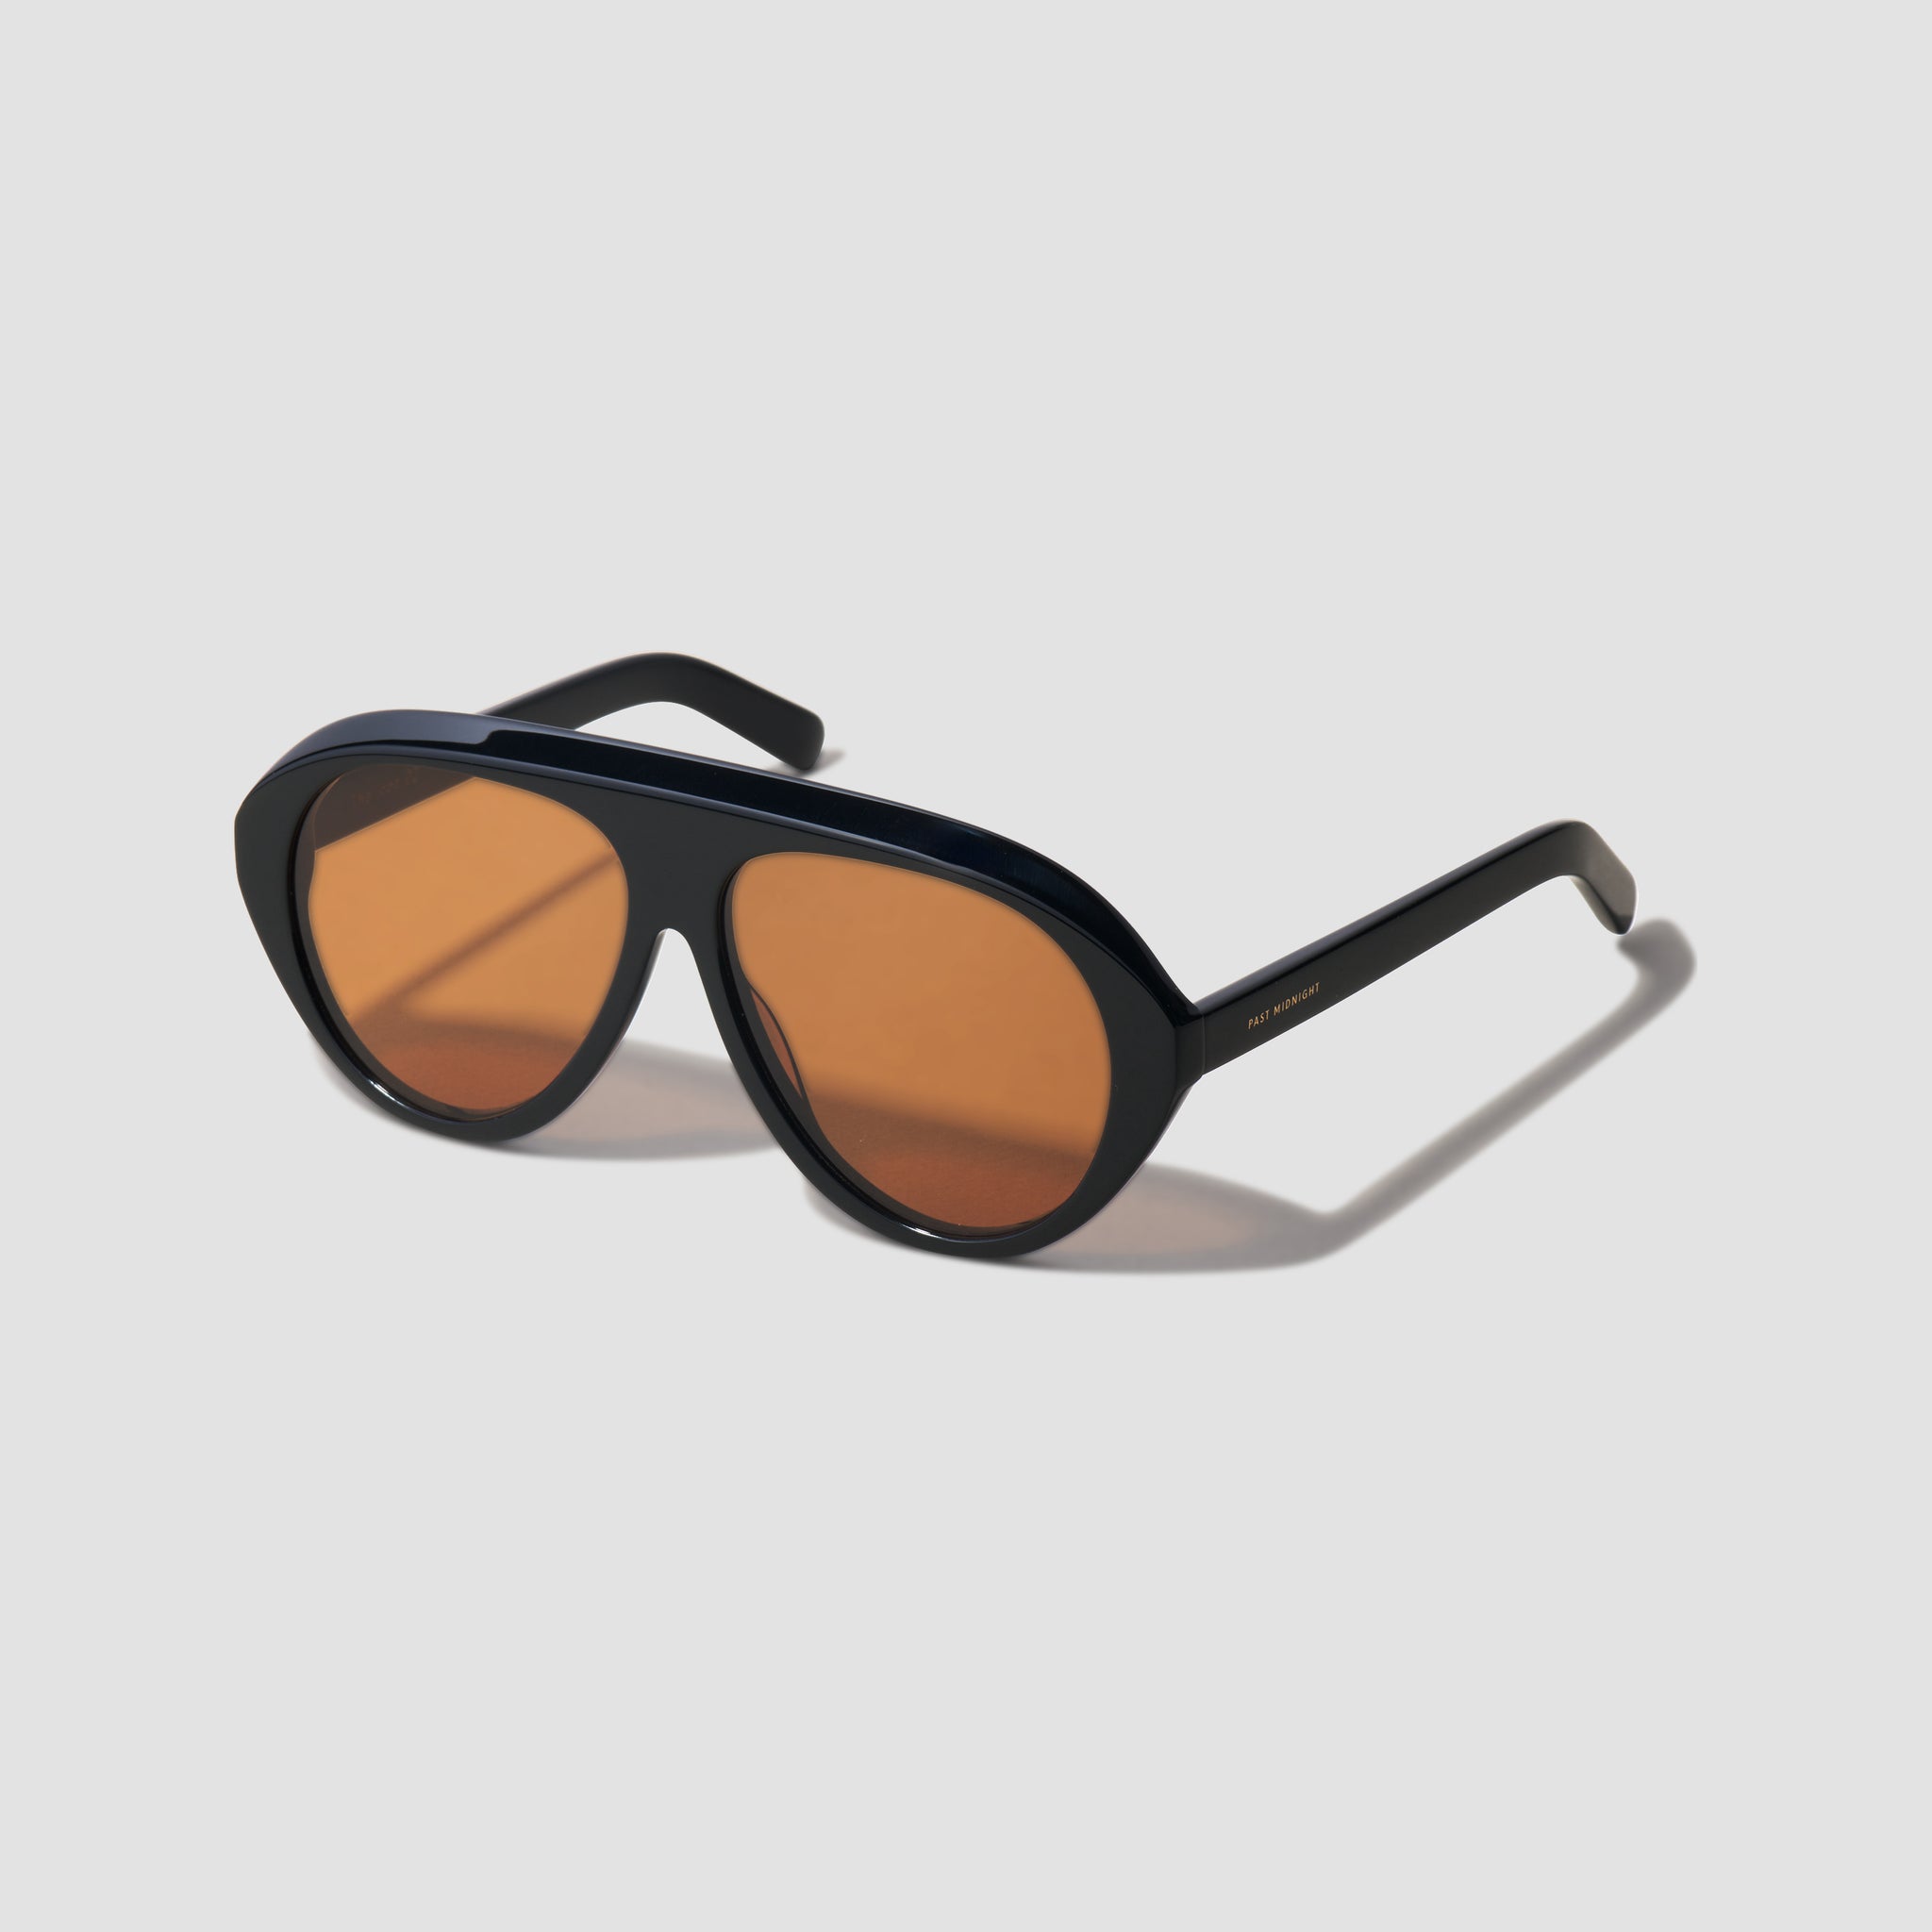 The Icon Sunglasses